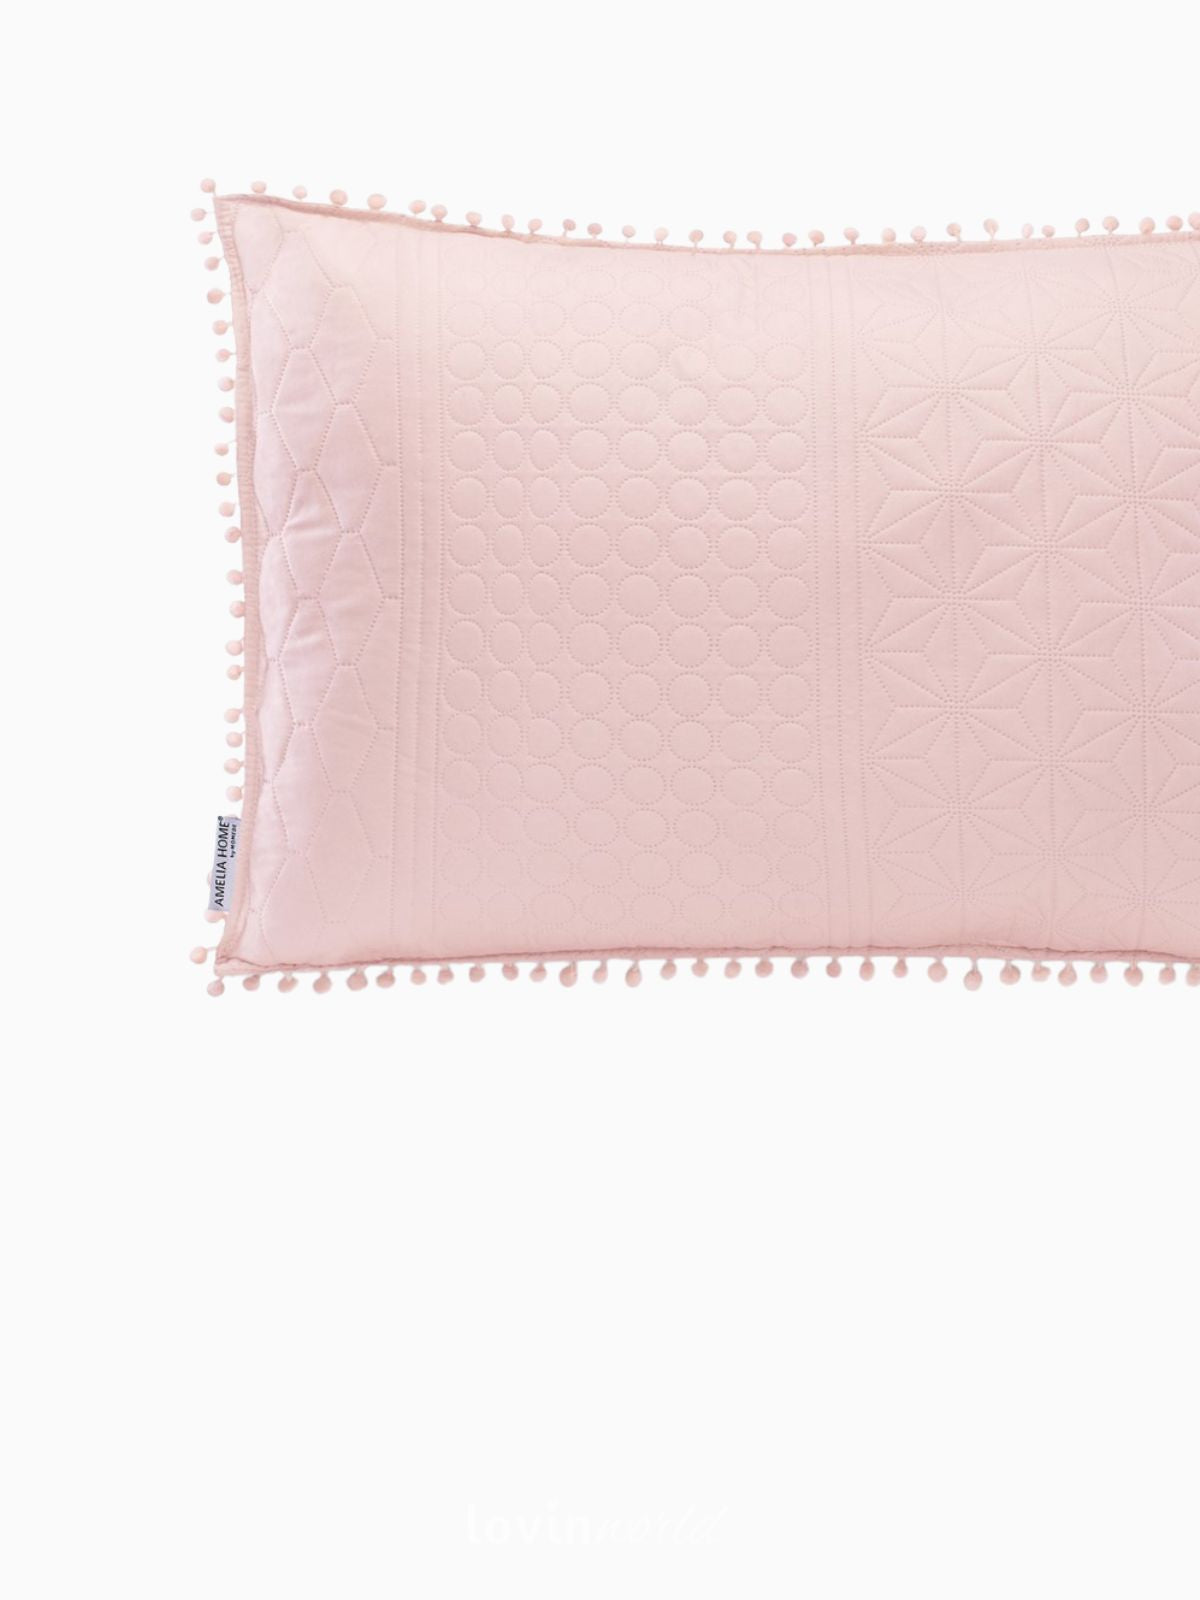 Cuscino decorativo Meadore in colore rosa 50x70 cm.-3